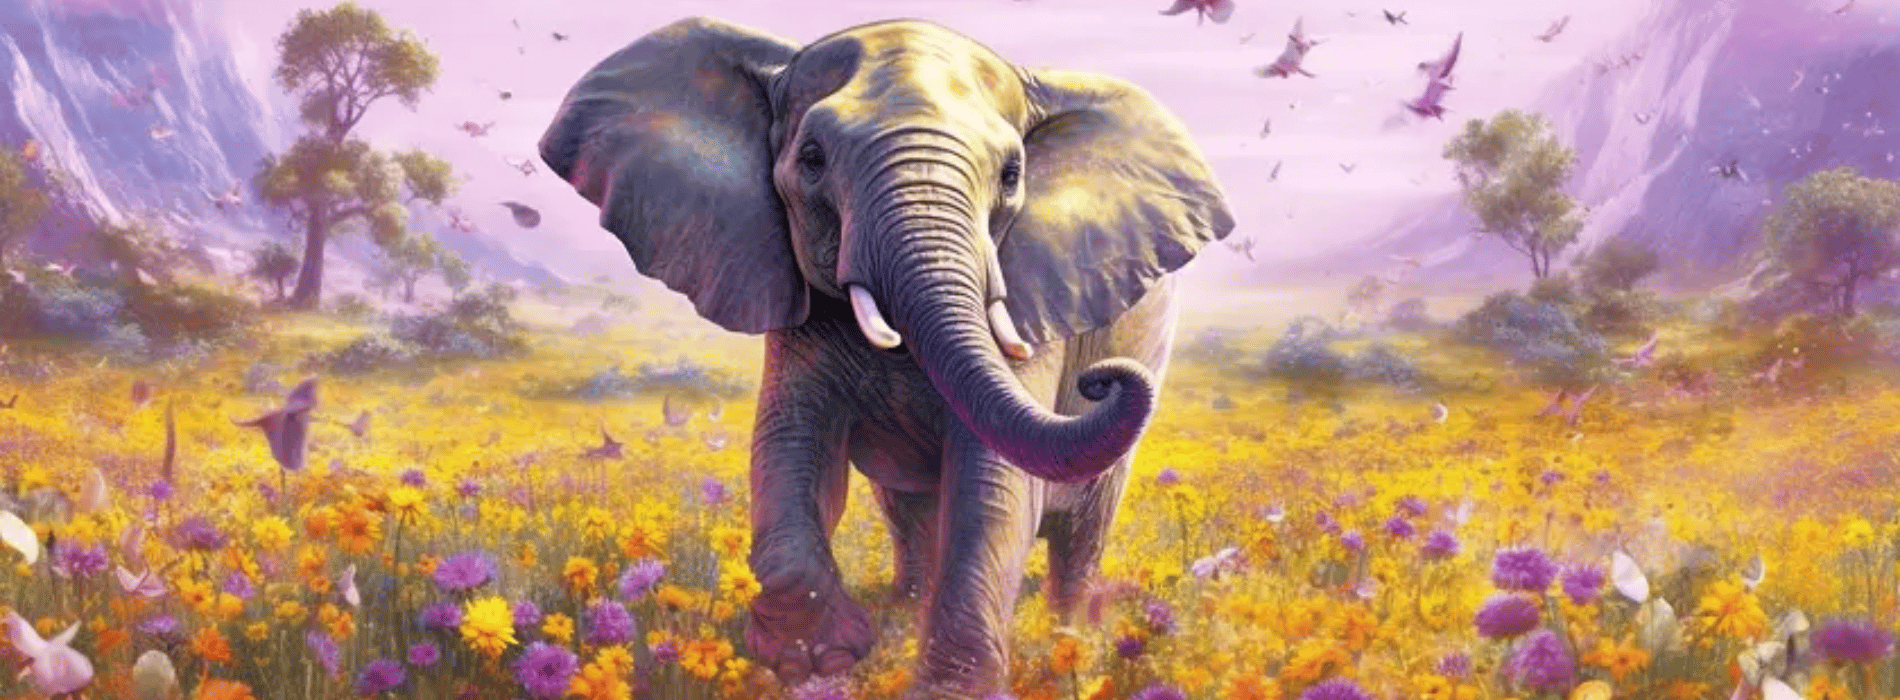 Significado espiritual del elefante